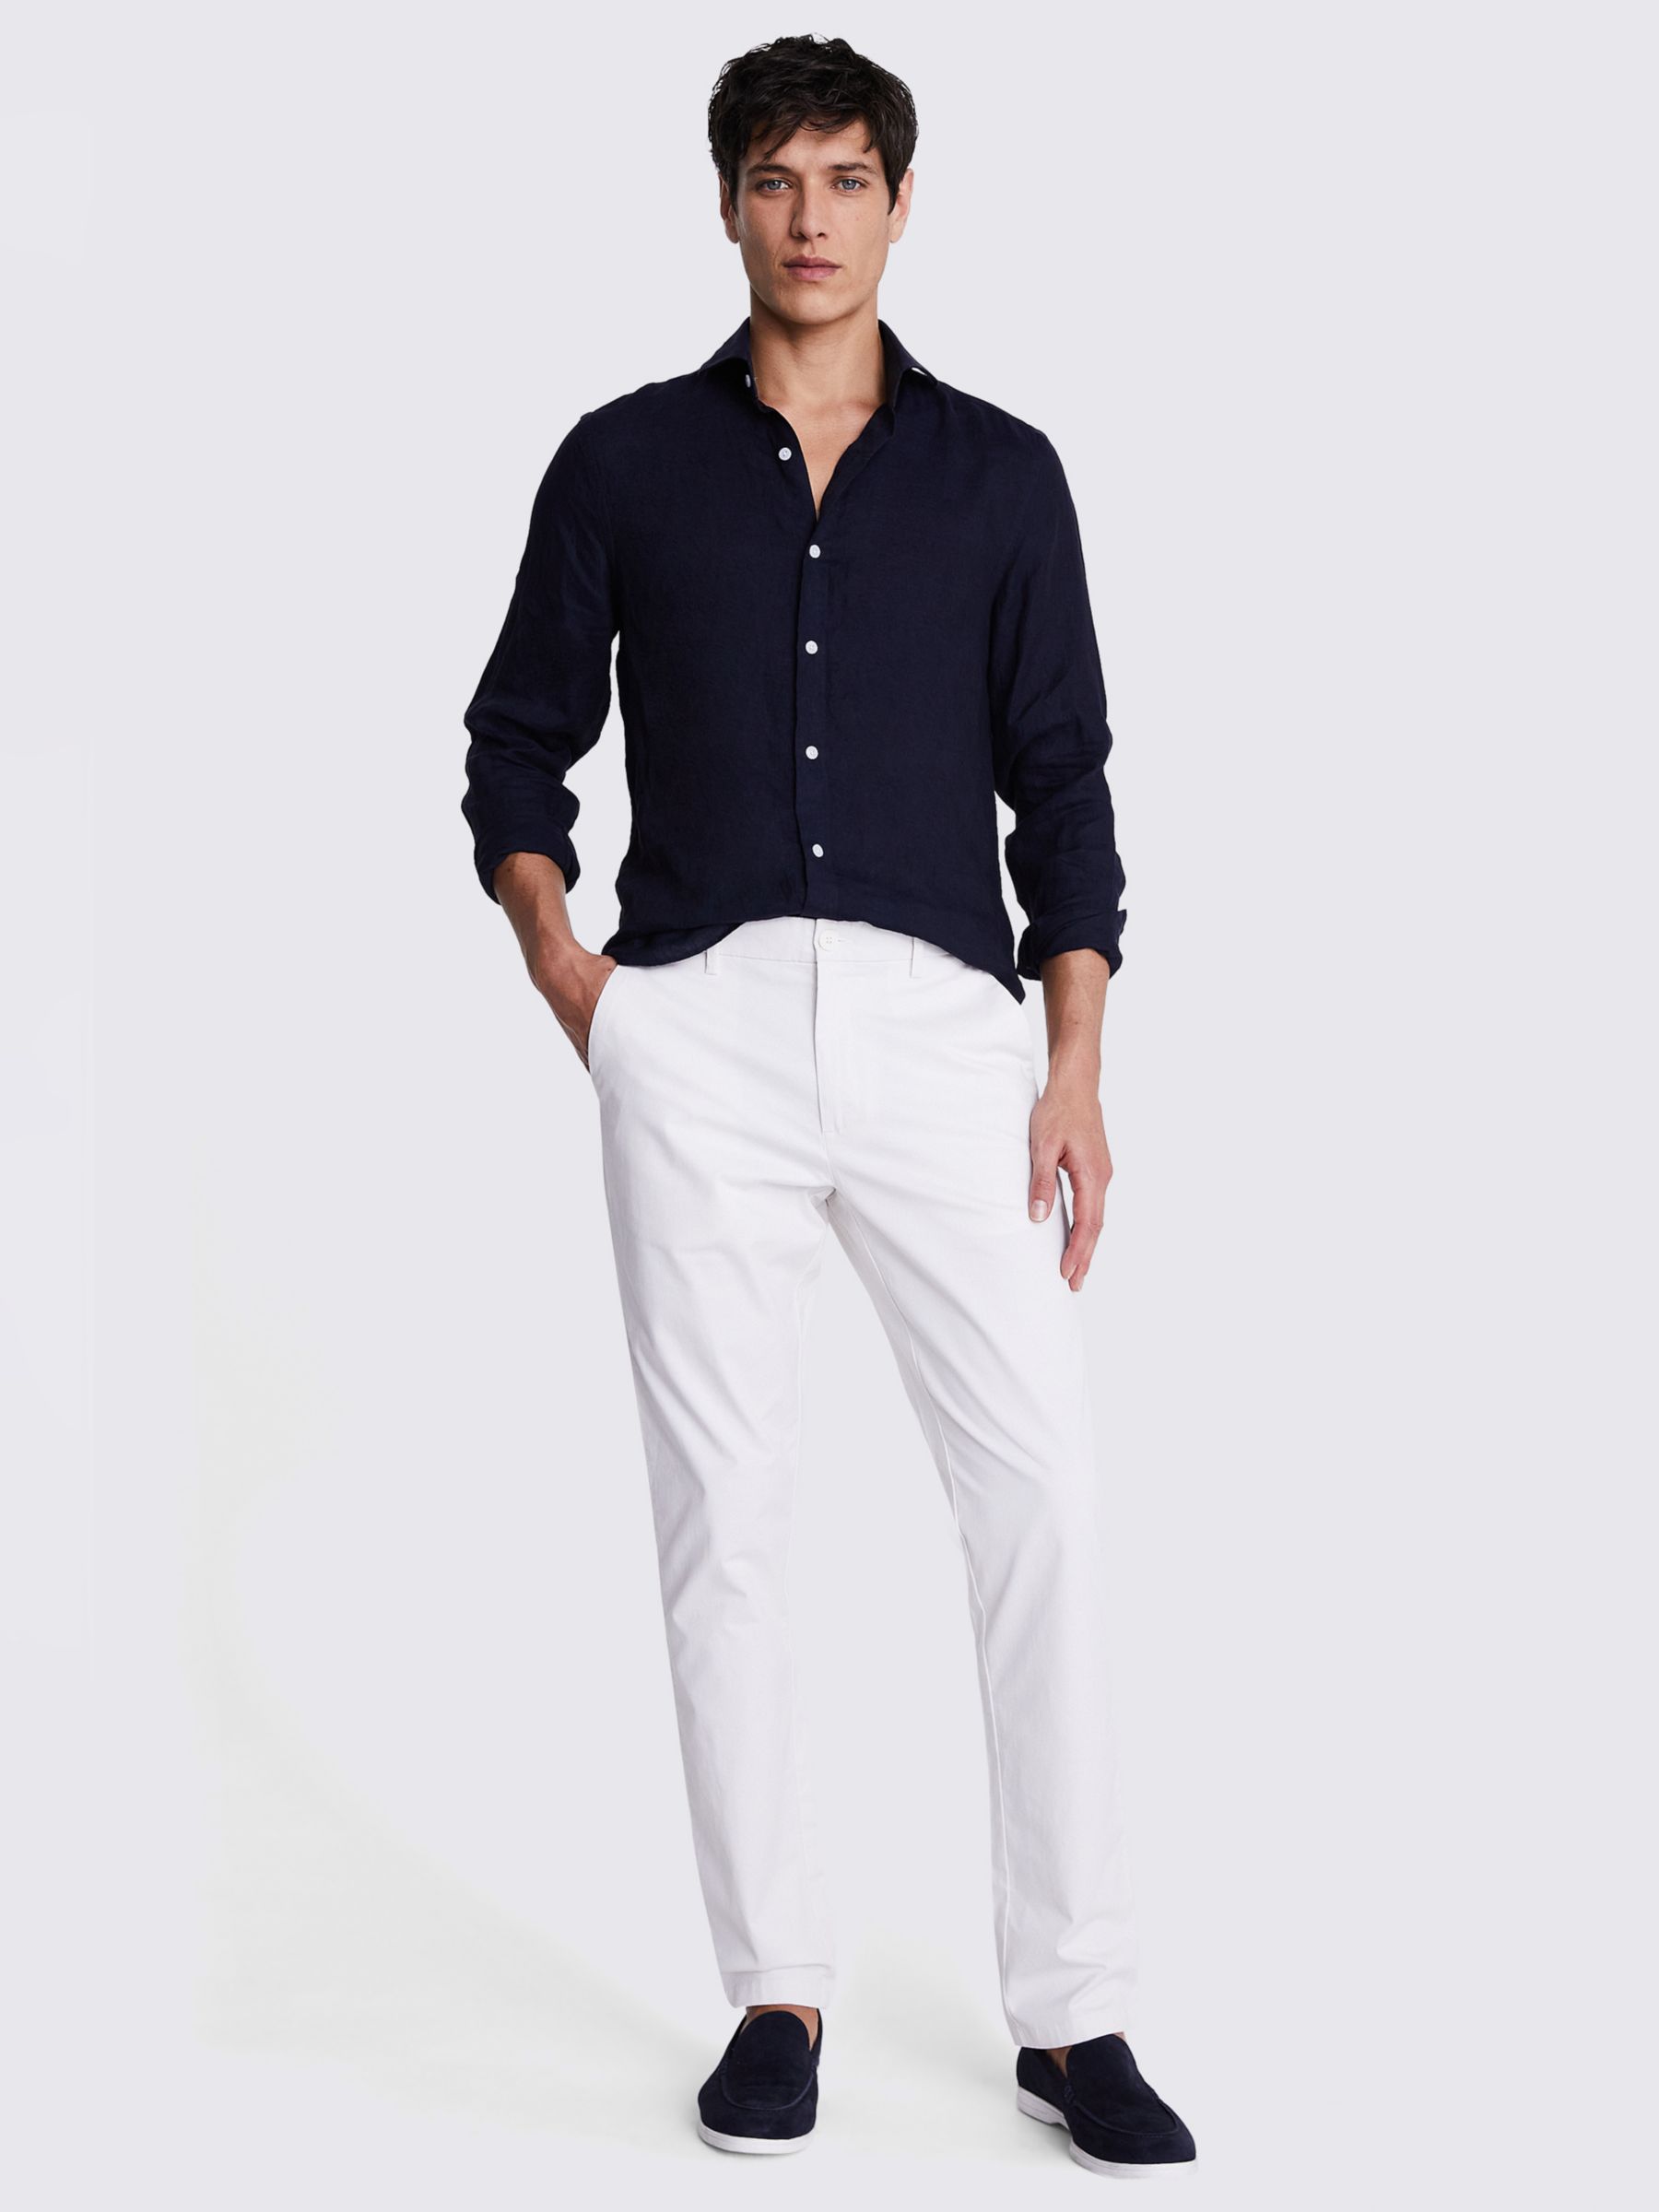 Moss Tailored Fit Linen Long Sleeve Shirt, Navy, S